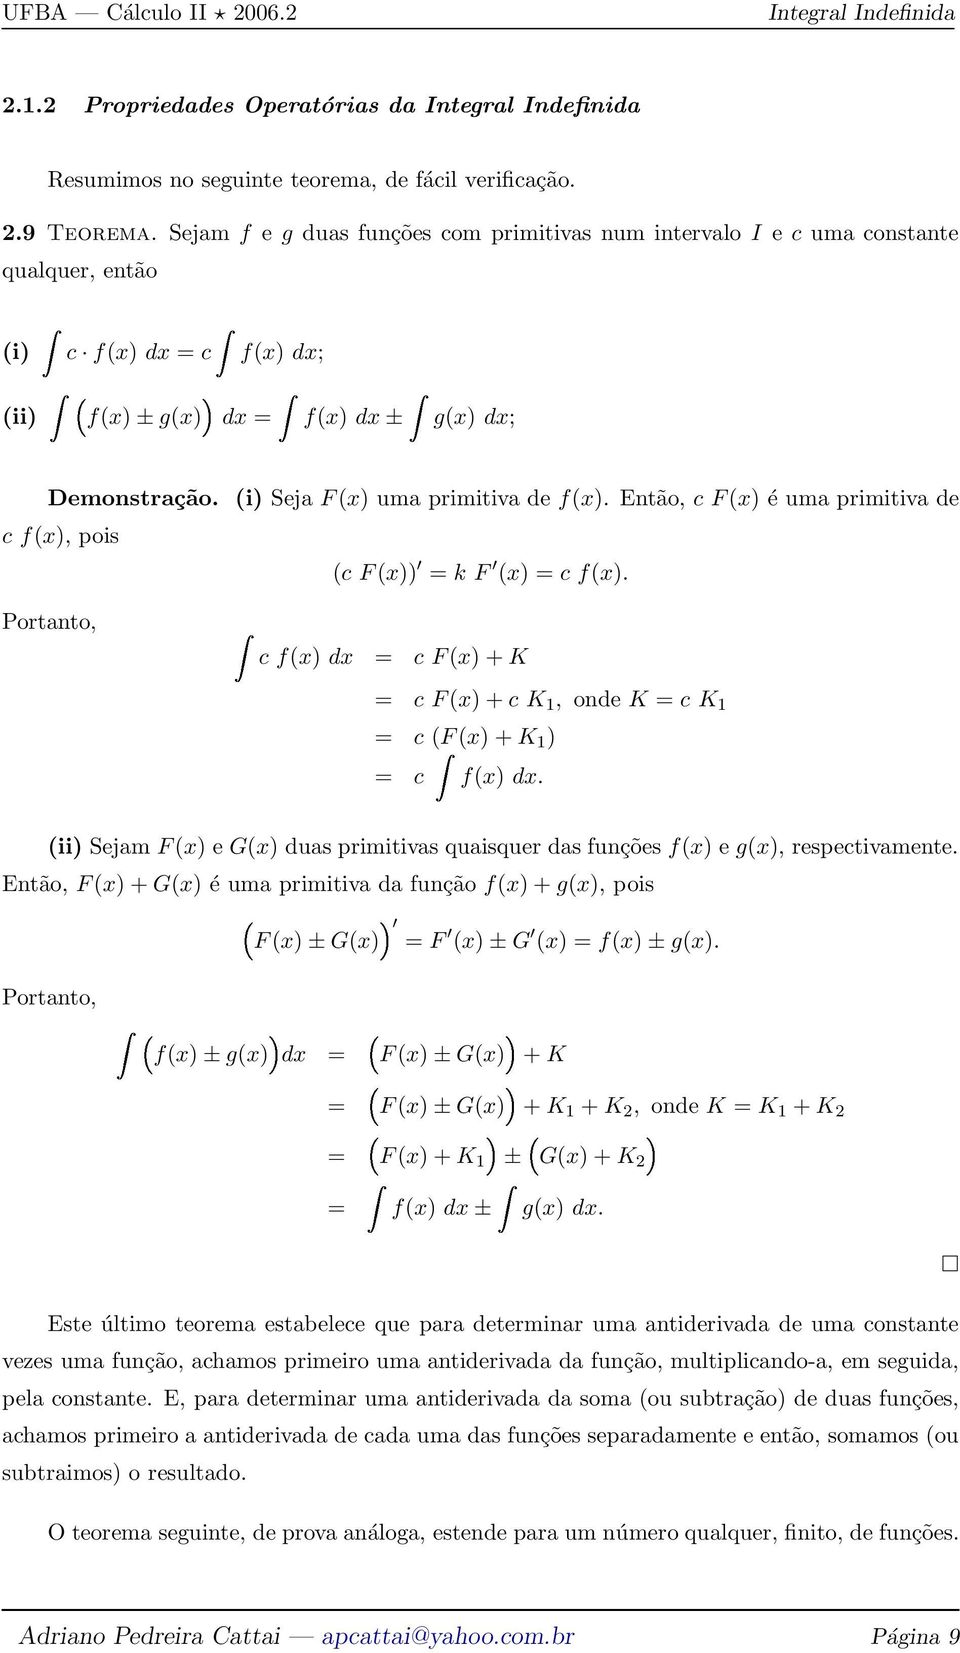 (i) Seja F(x) uma primitiva de f(x). Então, c F(x) é uma primitiva de c f(x), pois (c F(x)) = k F (x) = c f(x).